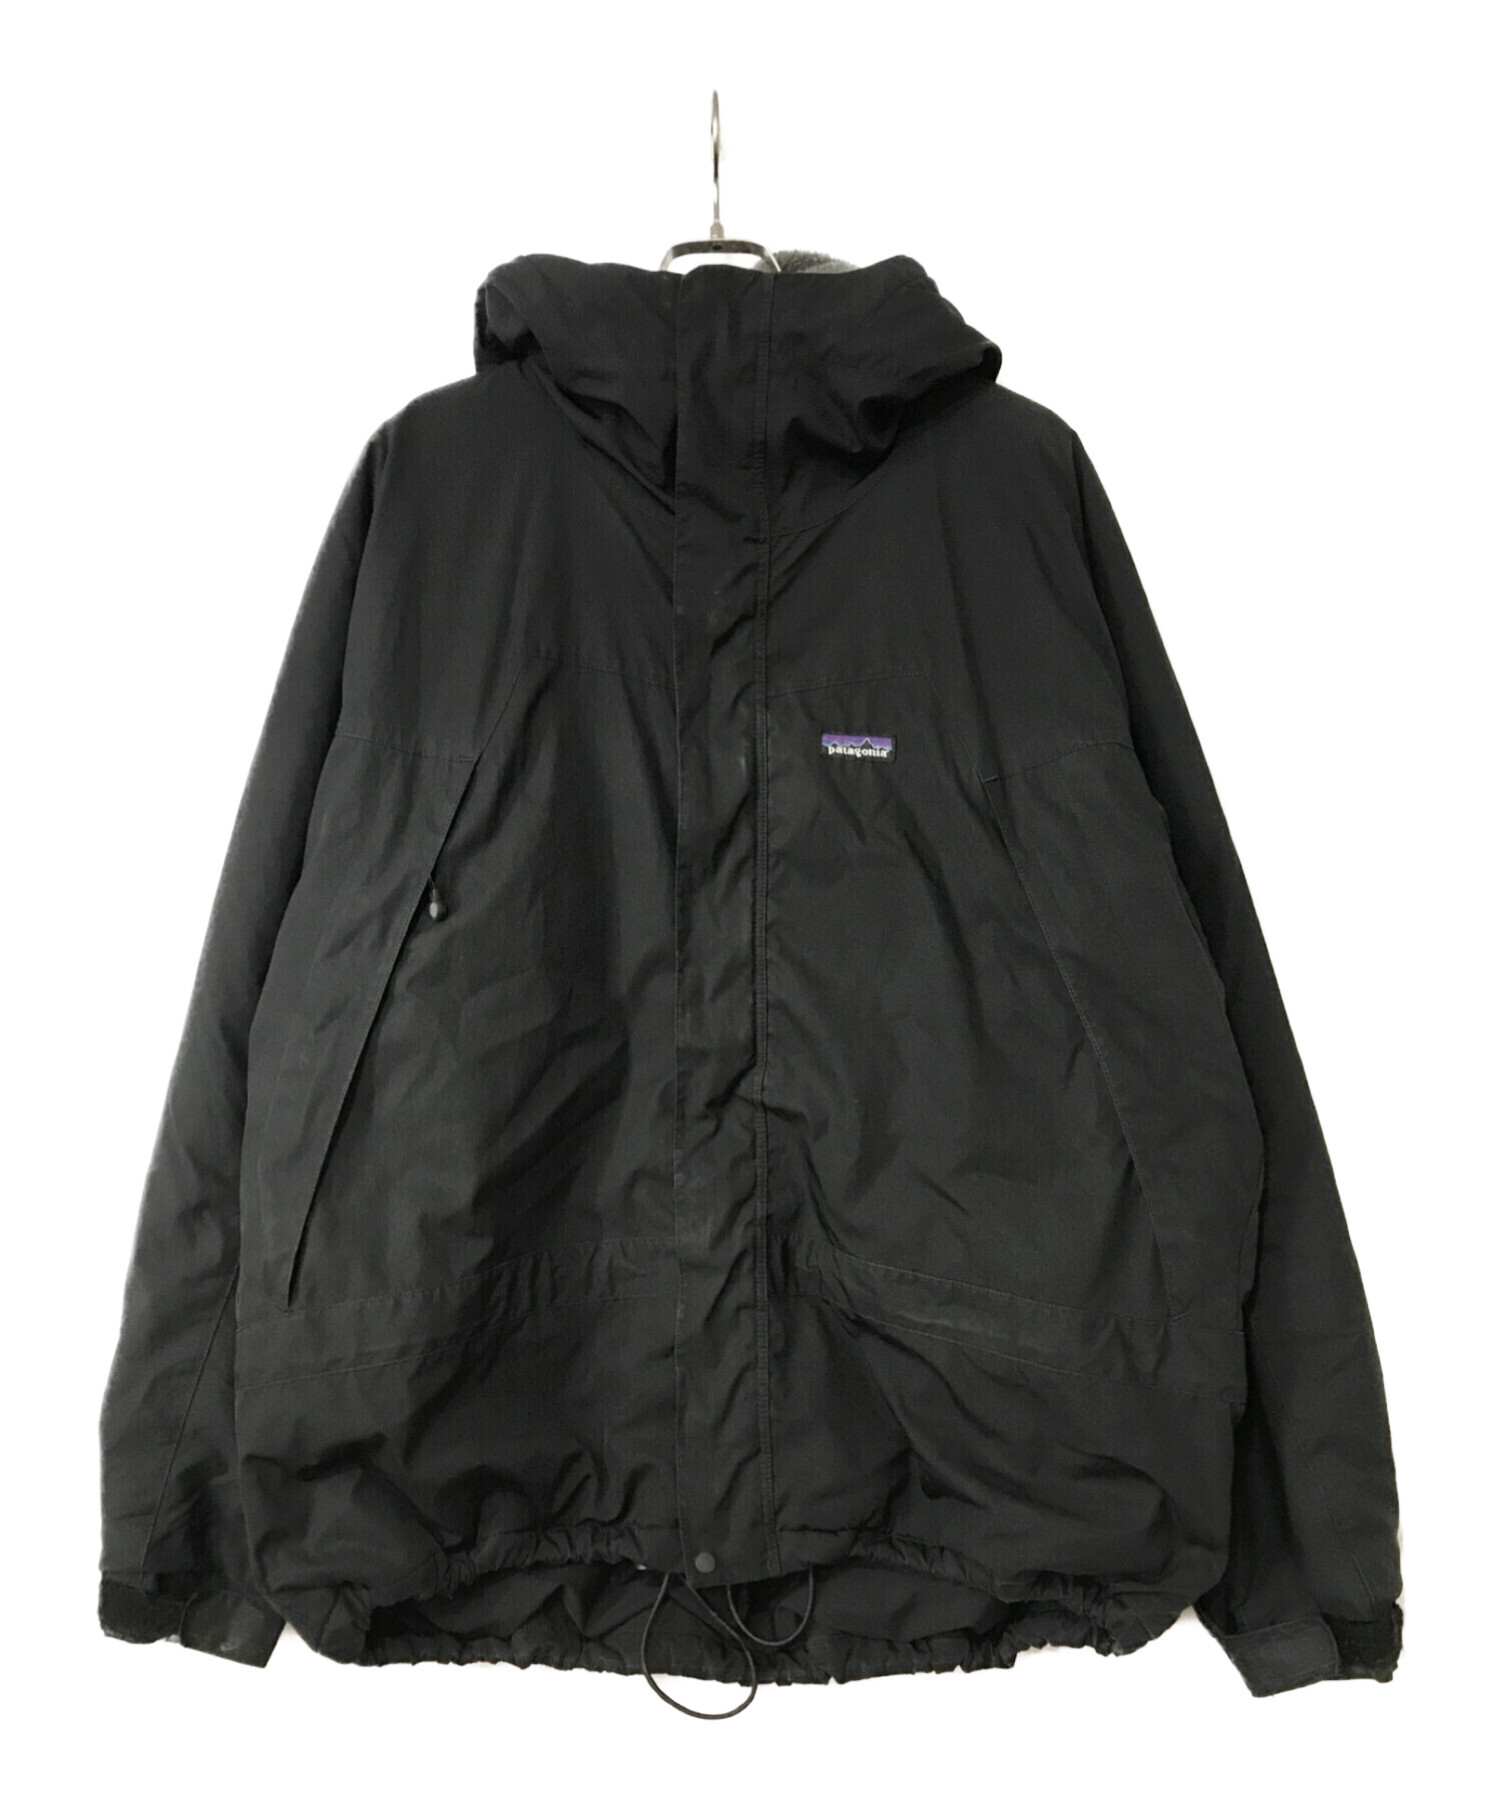 patagonia  インファーノジャケット ブラック サイズL2004年だと思われます